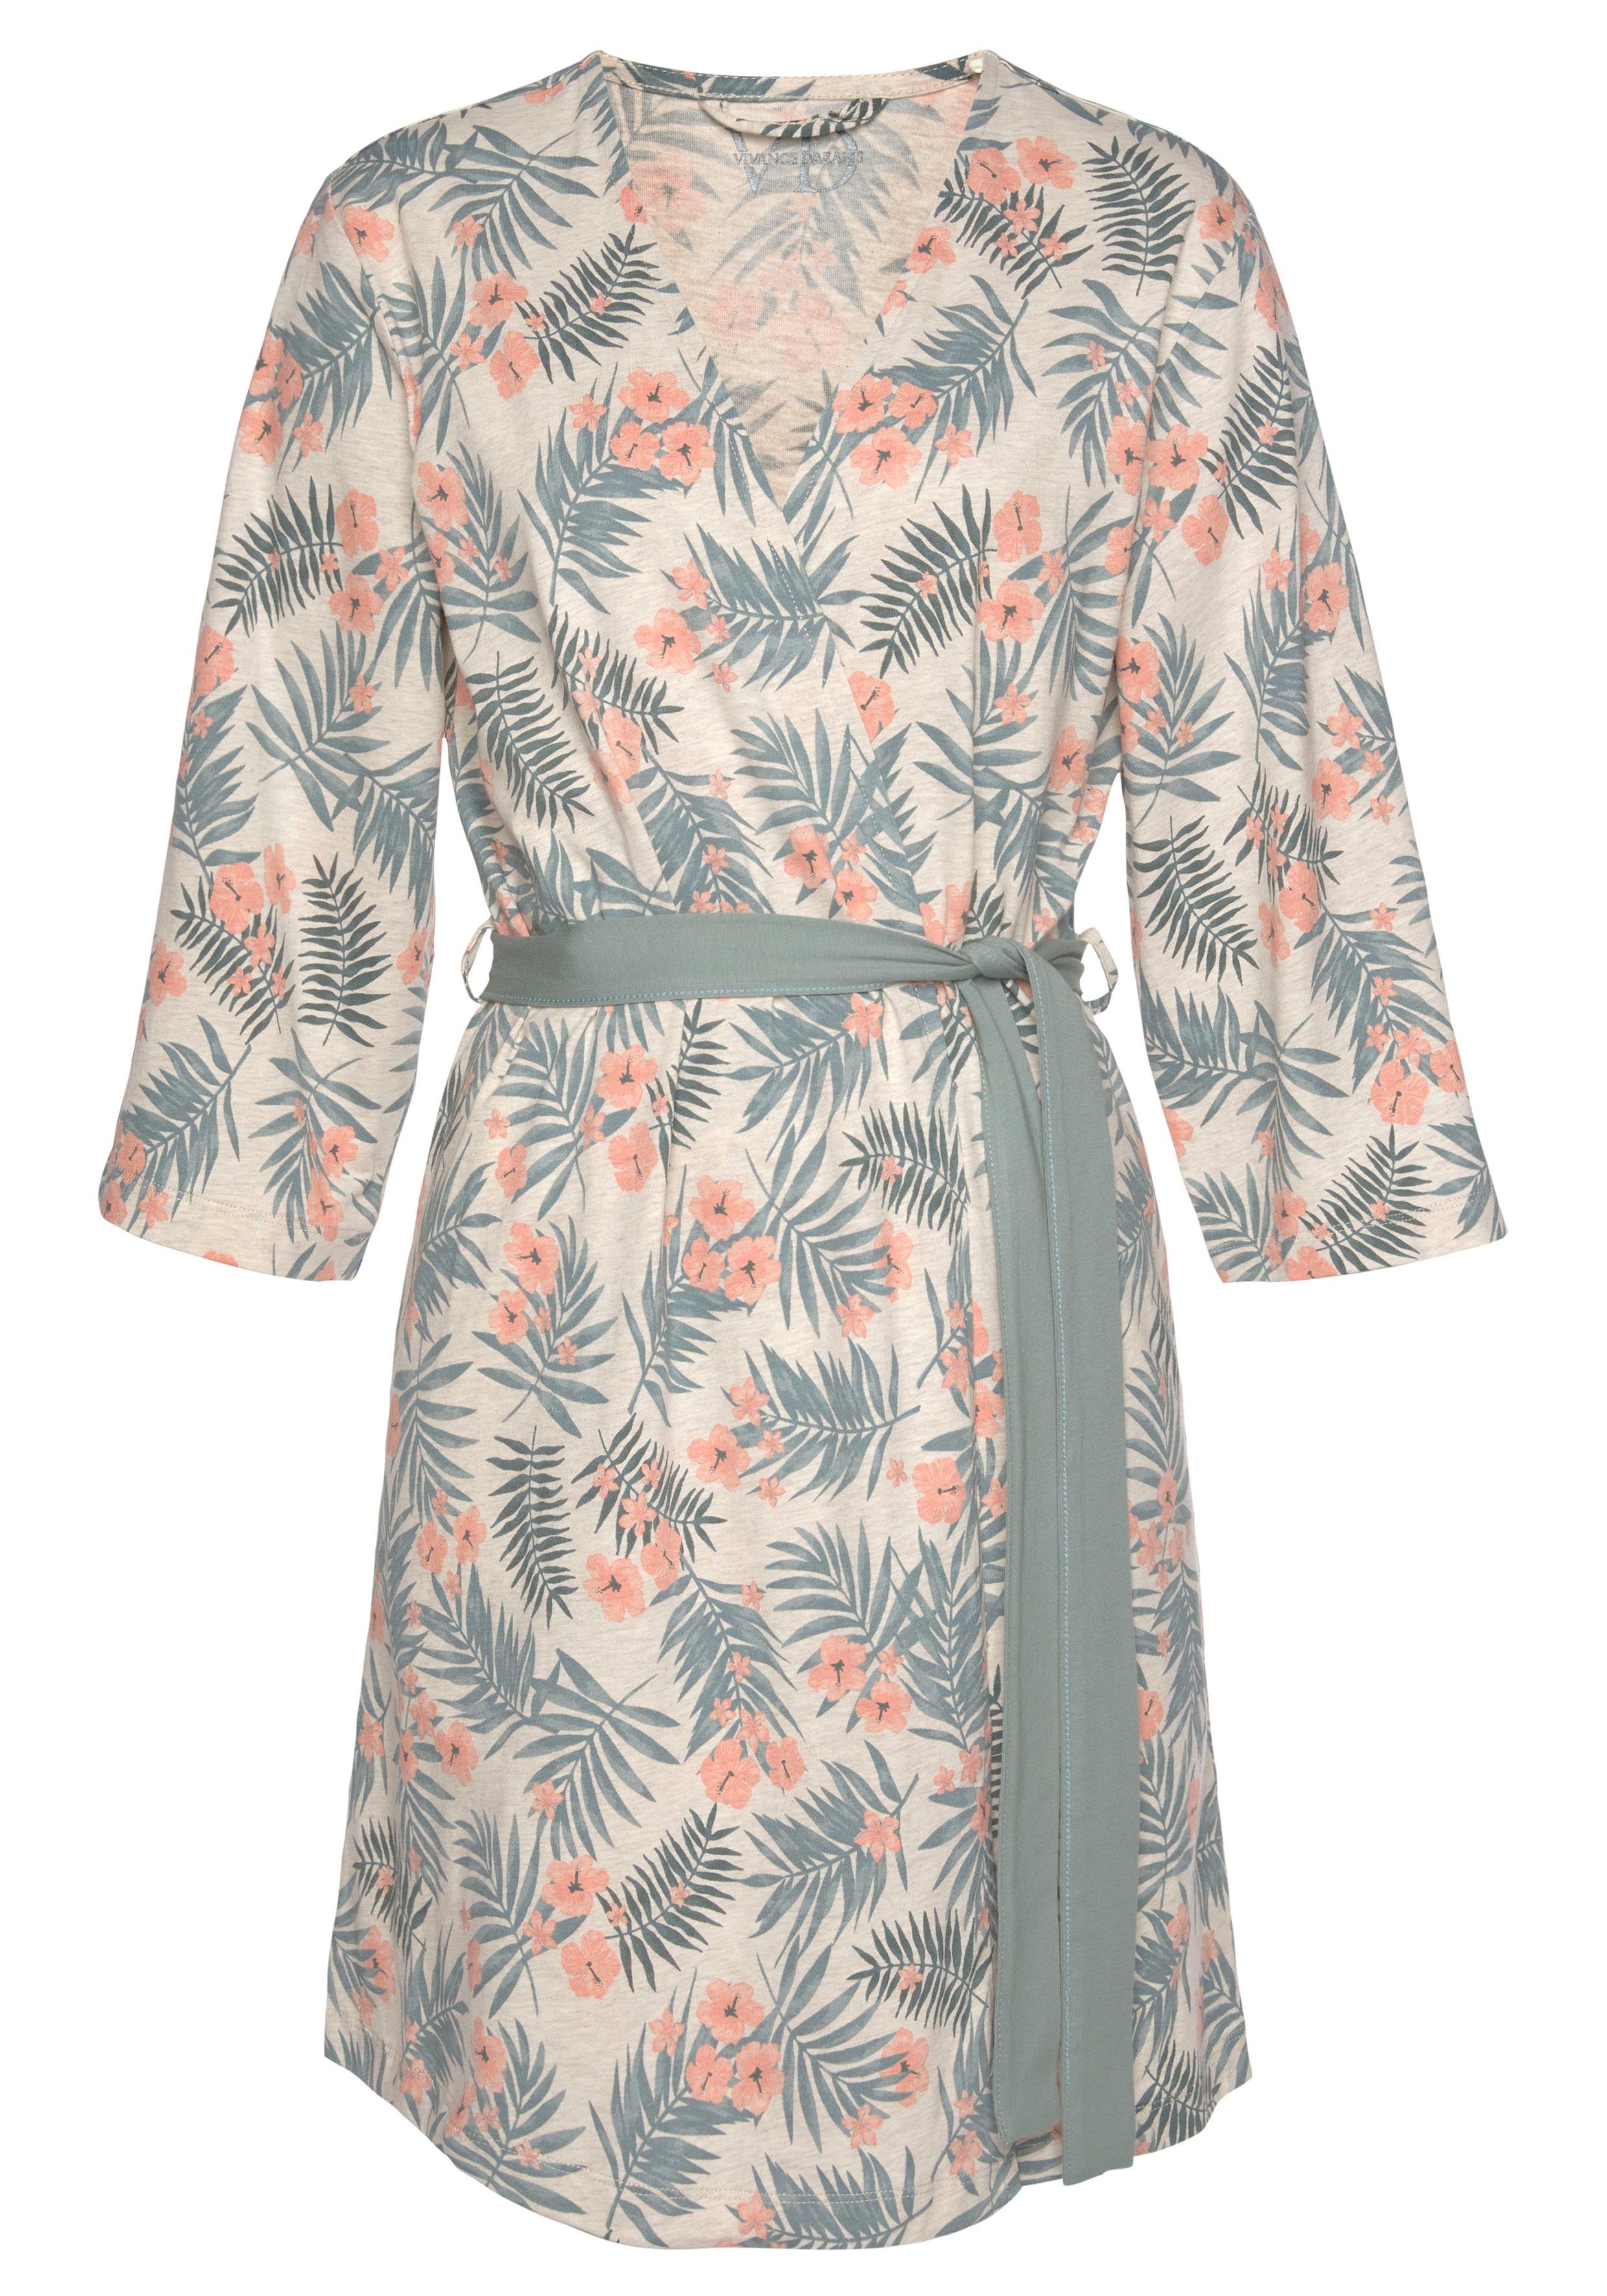 LASCANA Kimono, Kurzform, Baumwolle, Gürtel, Allover-Druck uni und in sand-grün